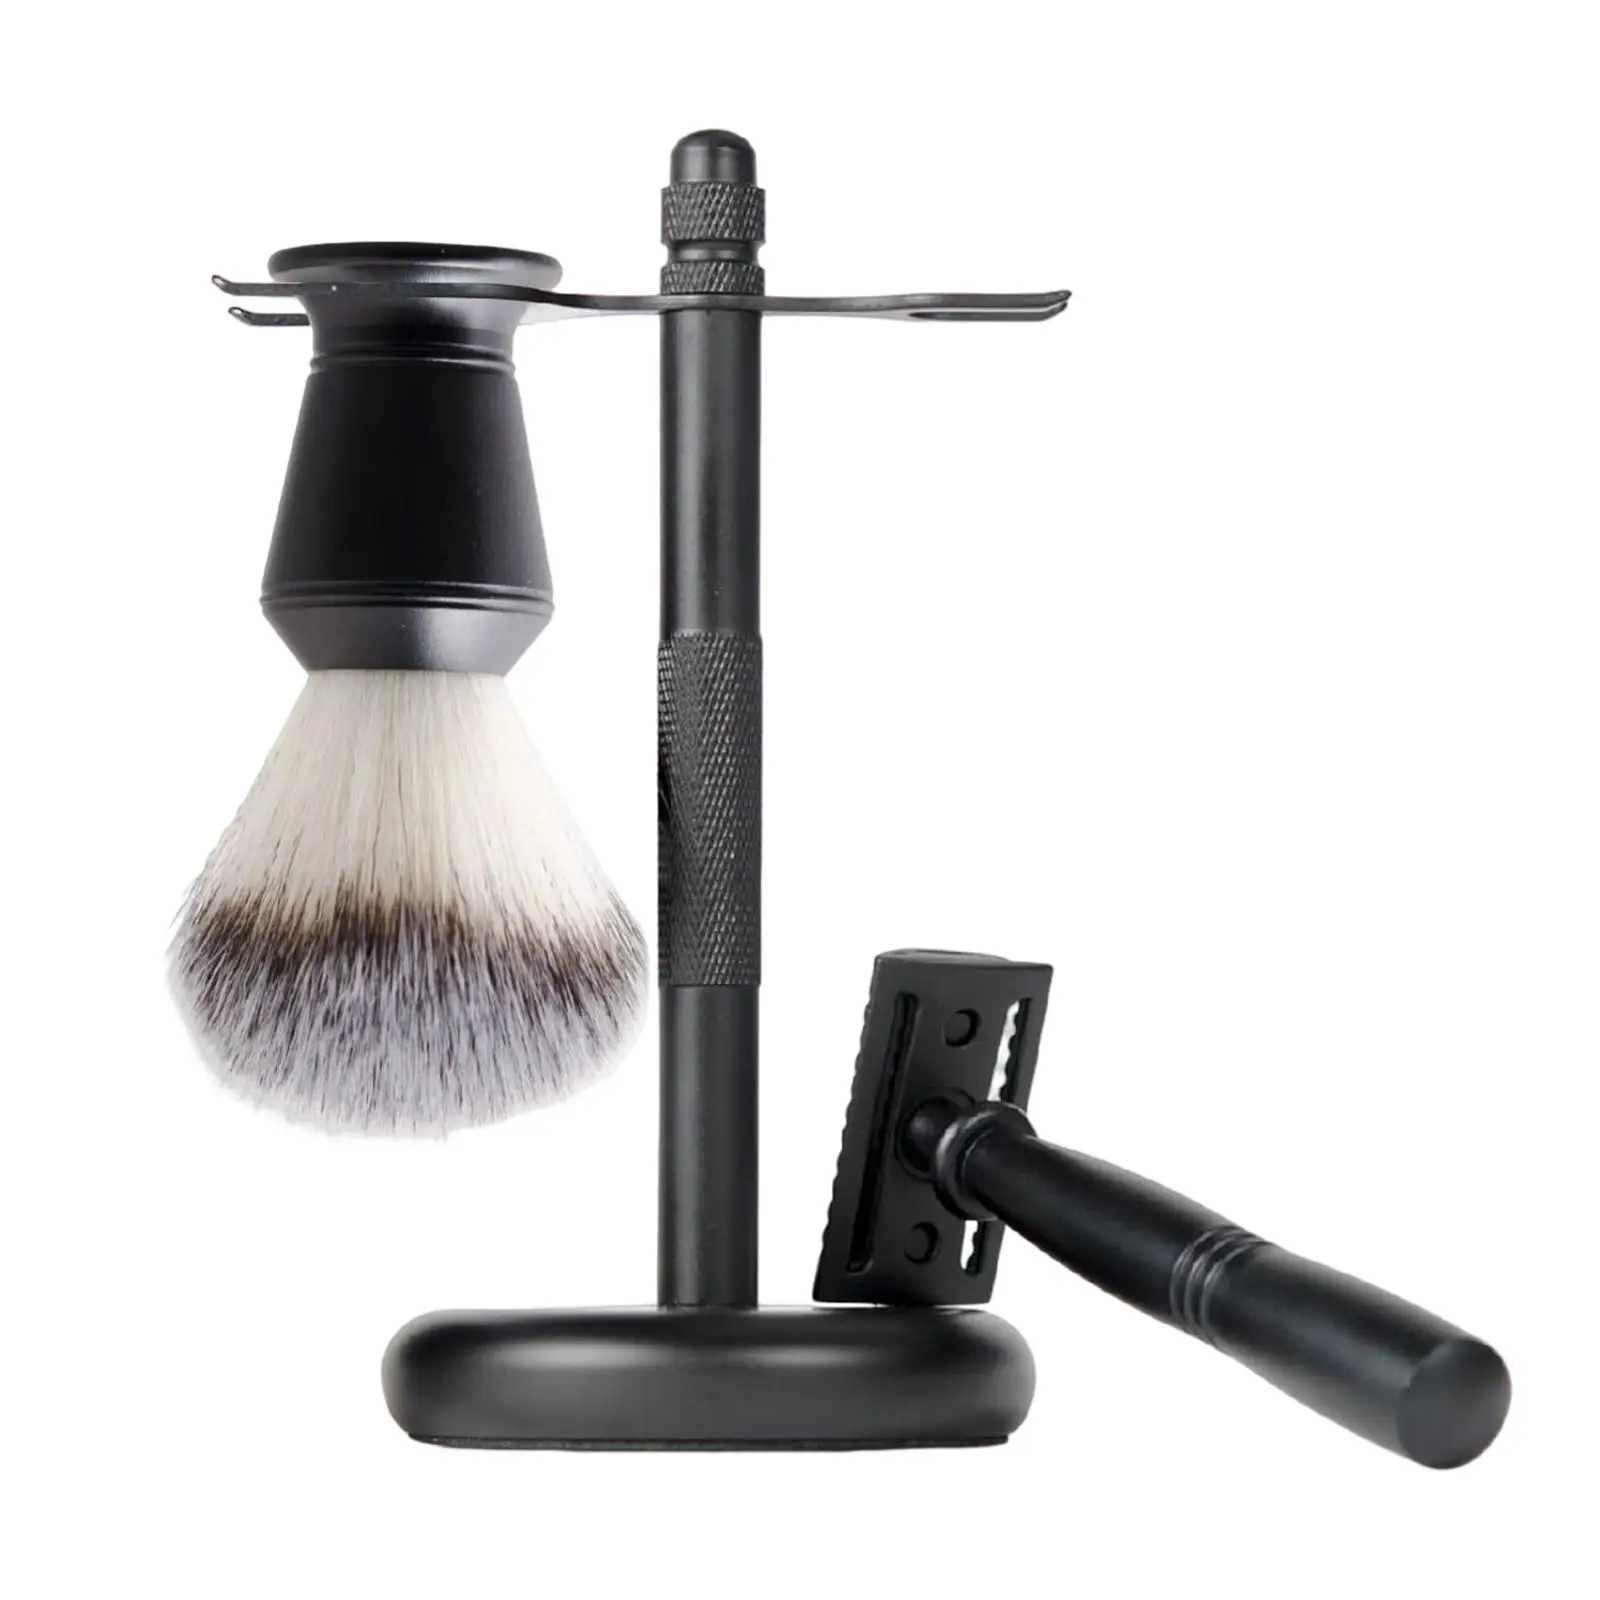 3Pcs Mens Shaving Set Black Double Edge Safety Razor Shaving Brush Stand Kit Razor+ Stand Holder + Shaving Brush Luxury Gift Set